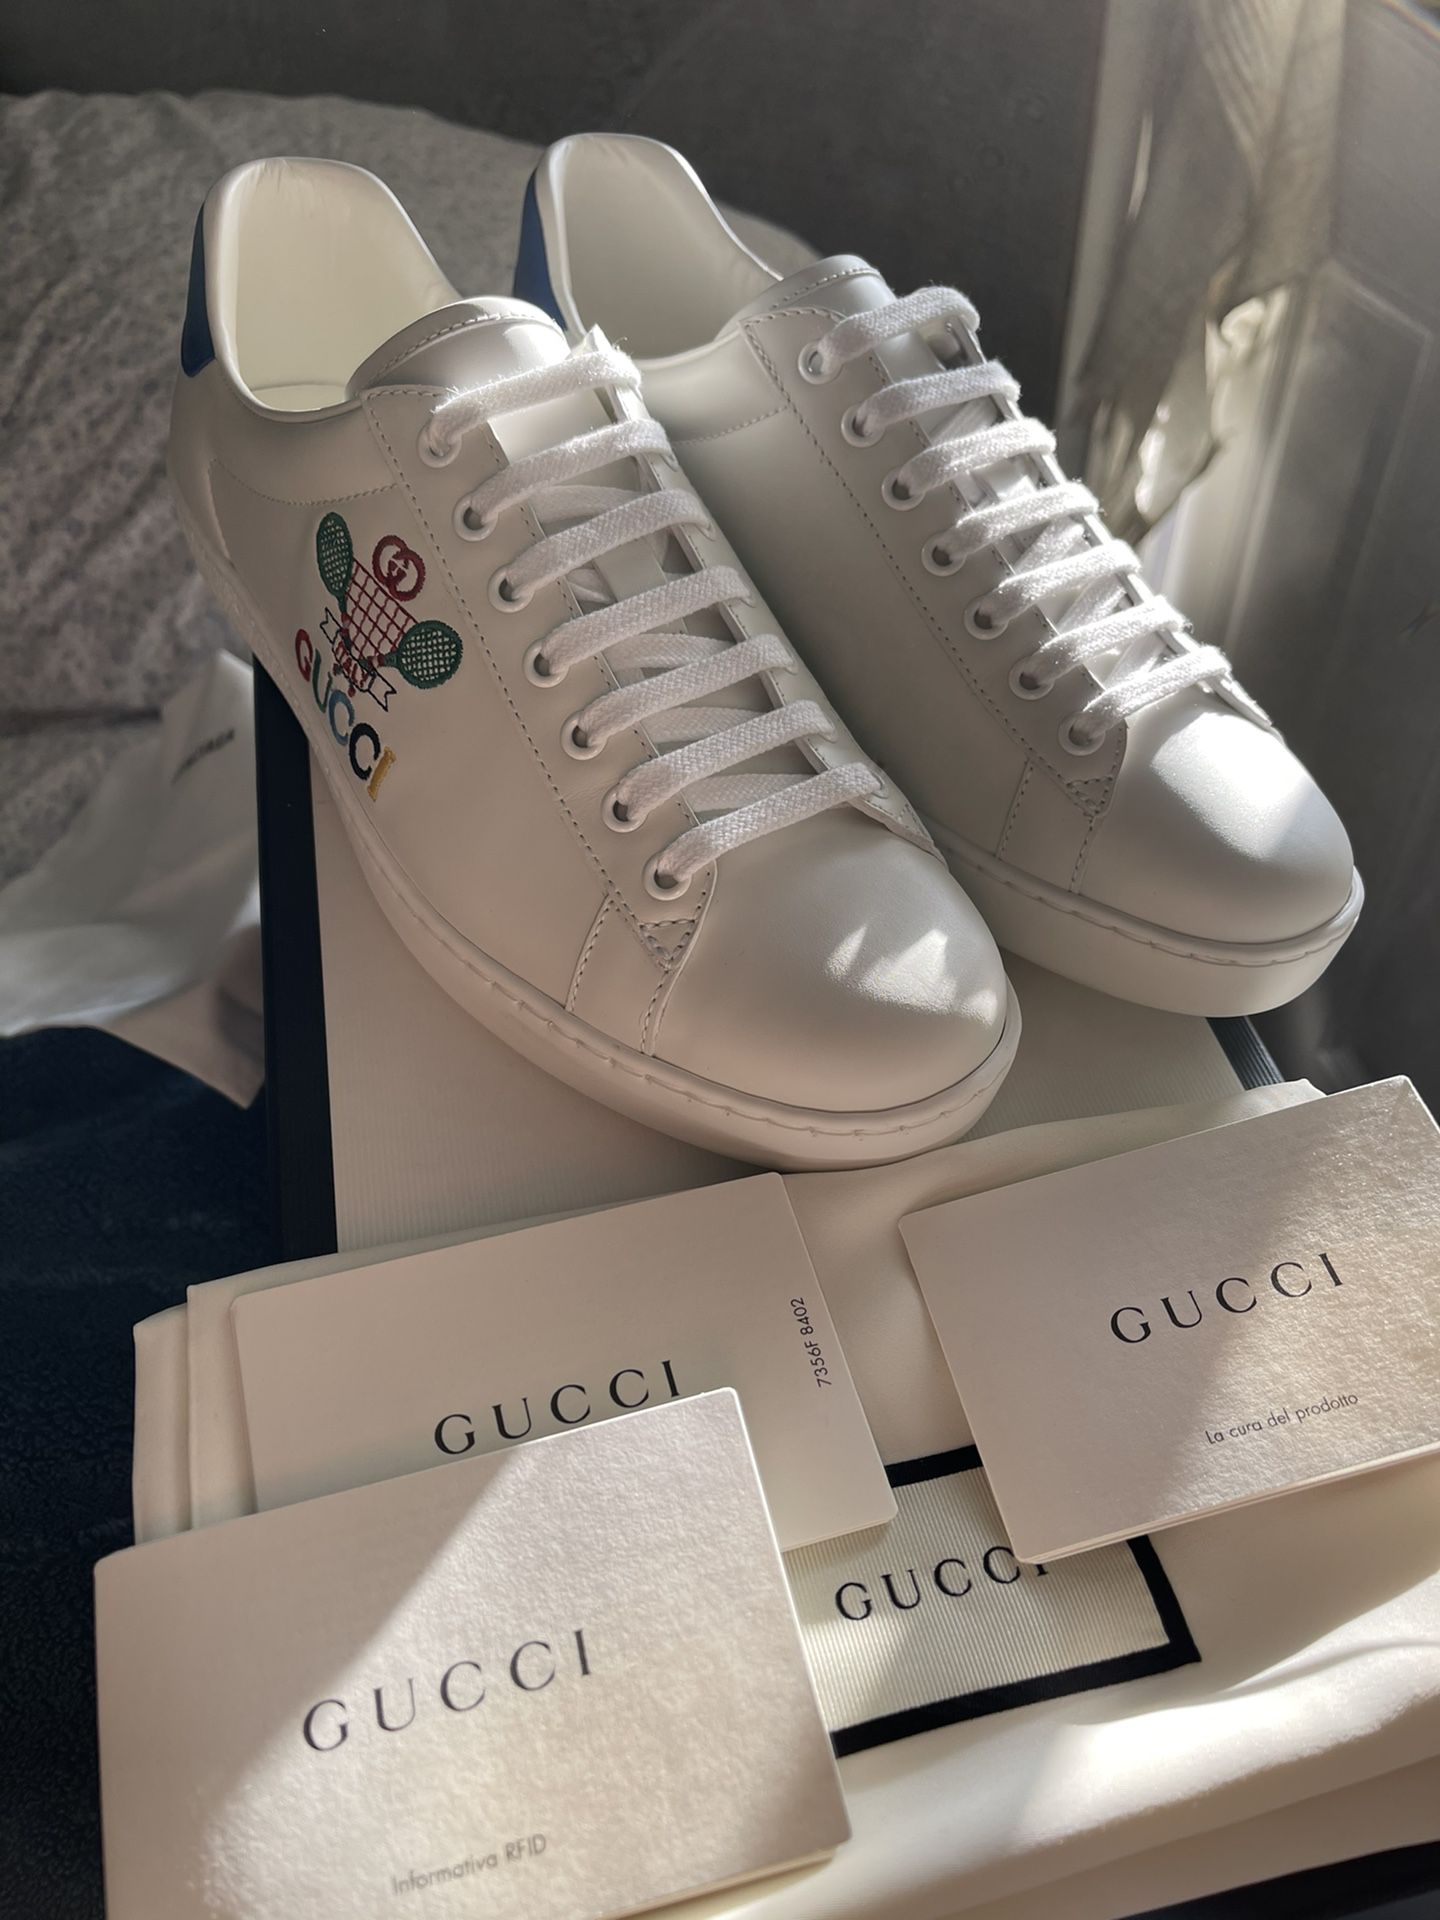 Gucci Ace Tennis Shoe